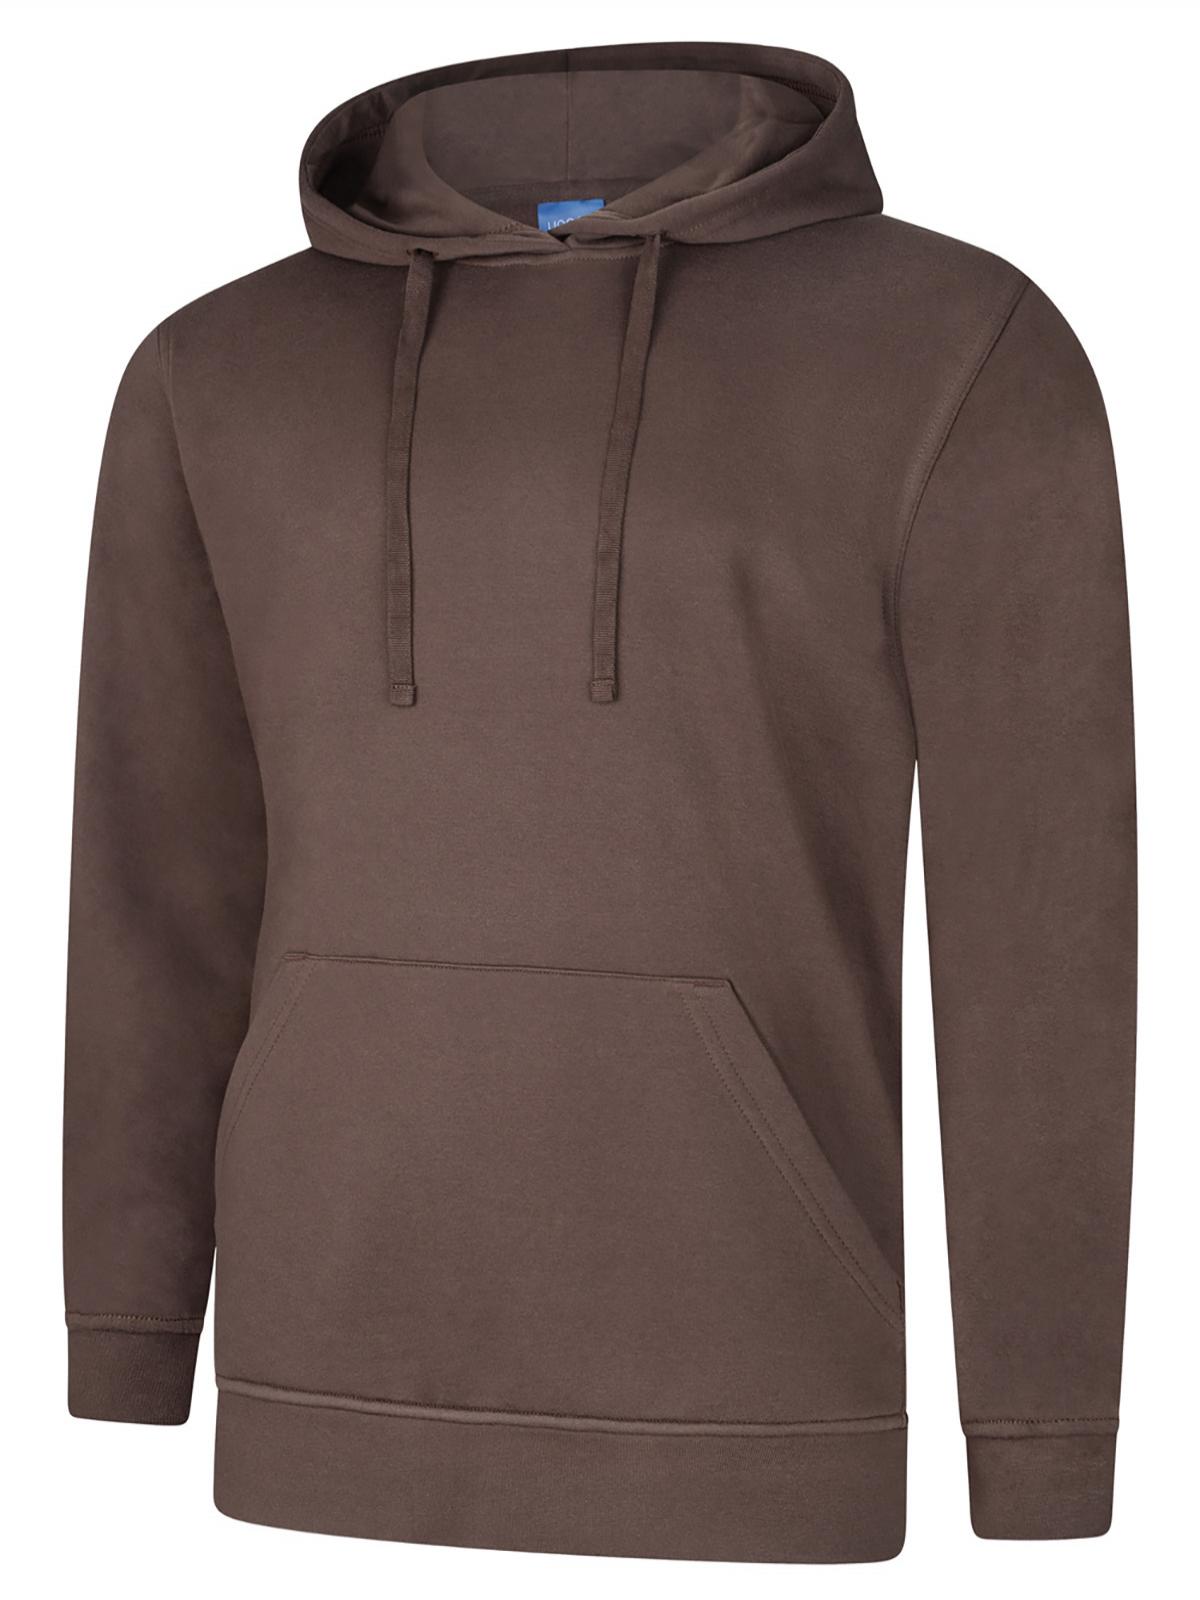 Uneek Deluxe Hooded Sweatshirt UC509 - Brown